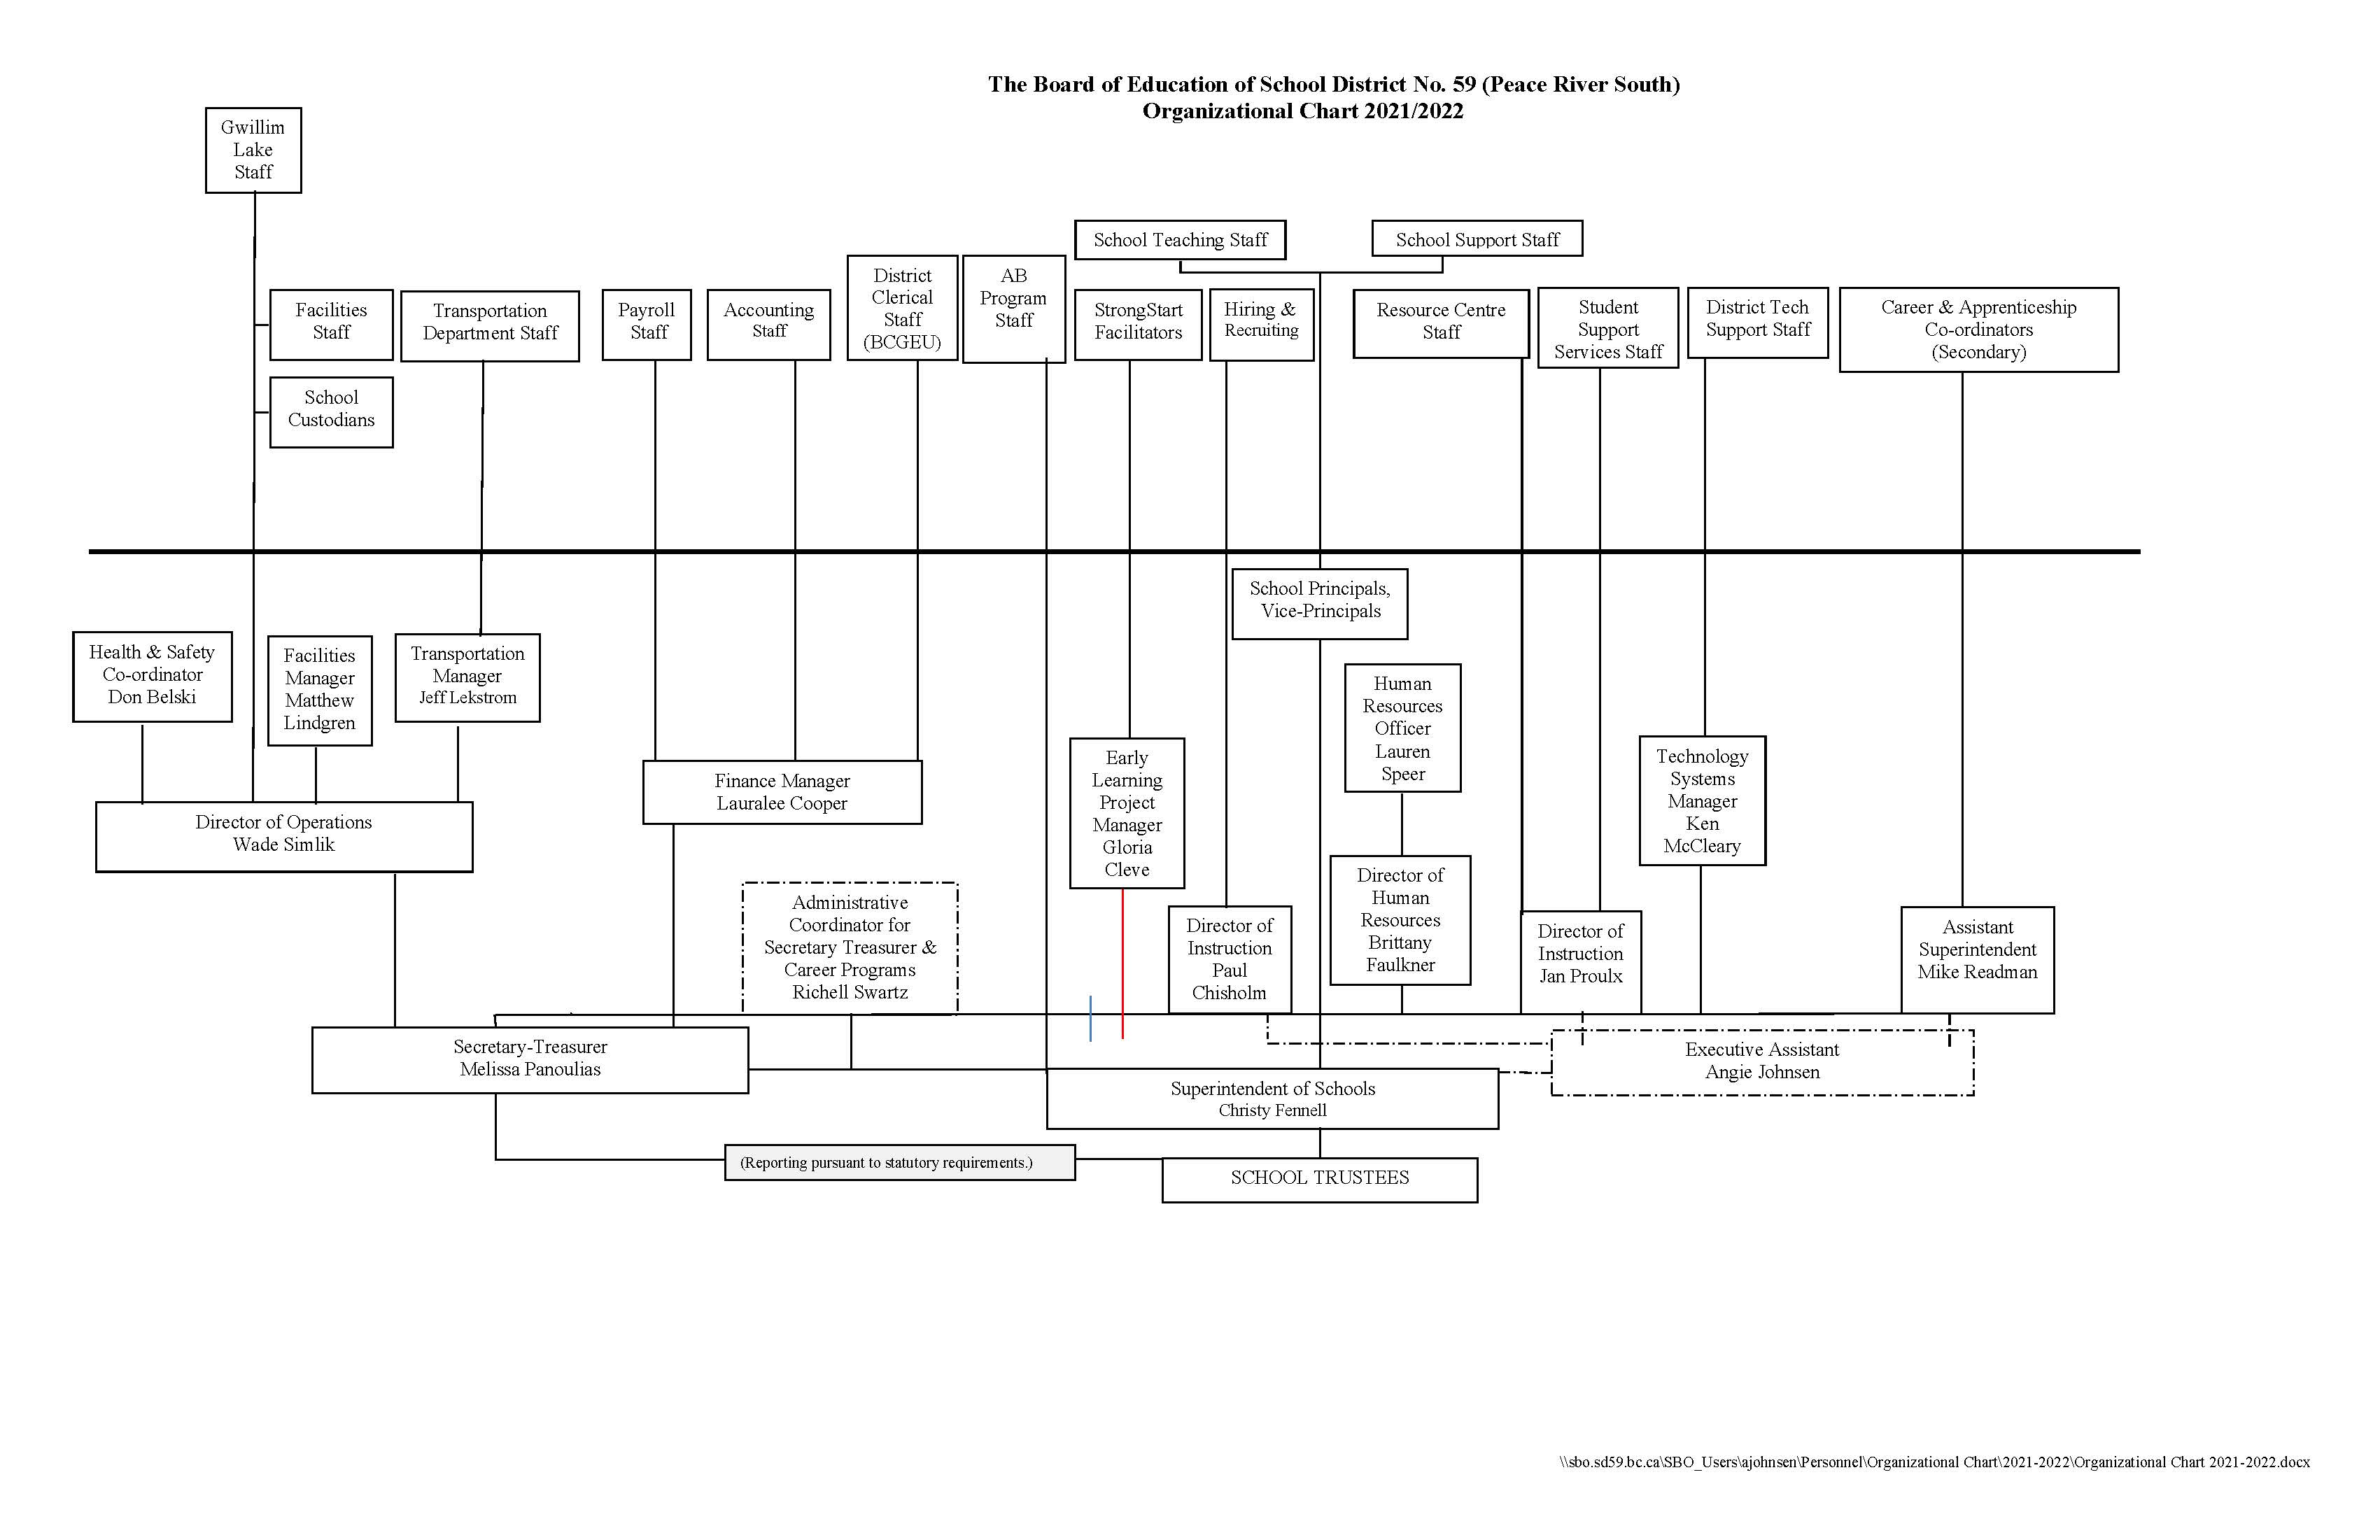 Organizational Chart 2021-22